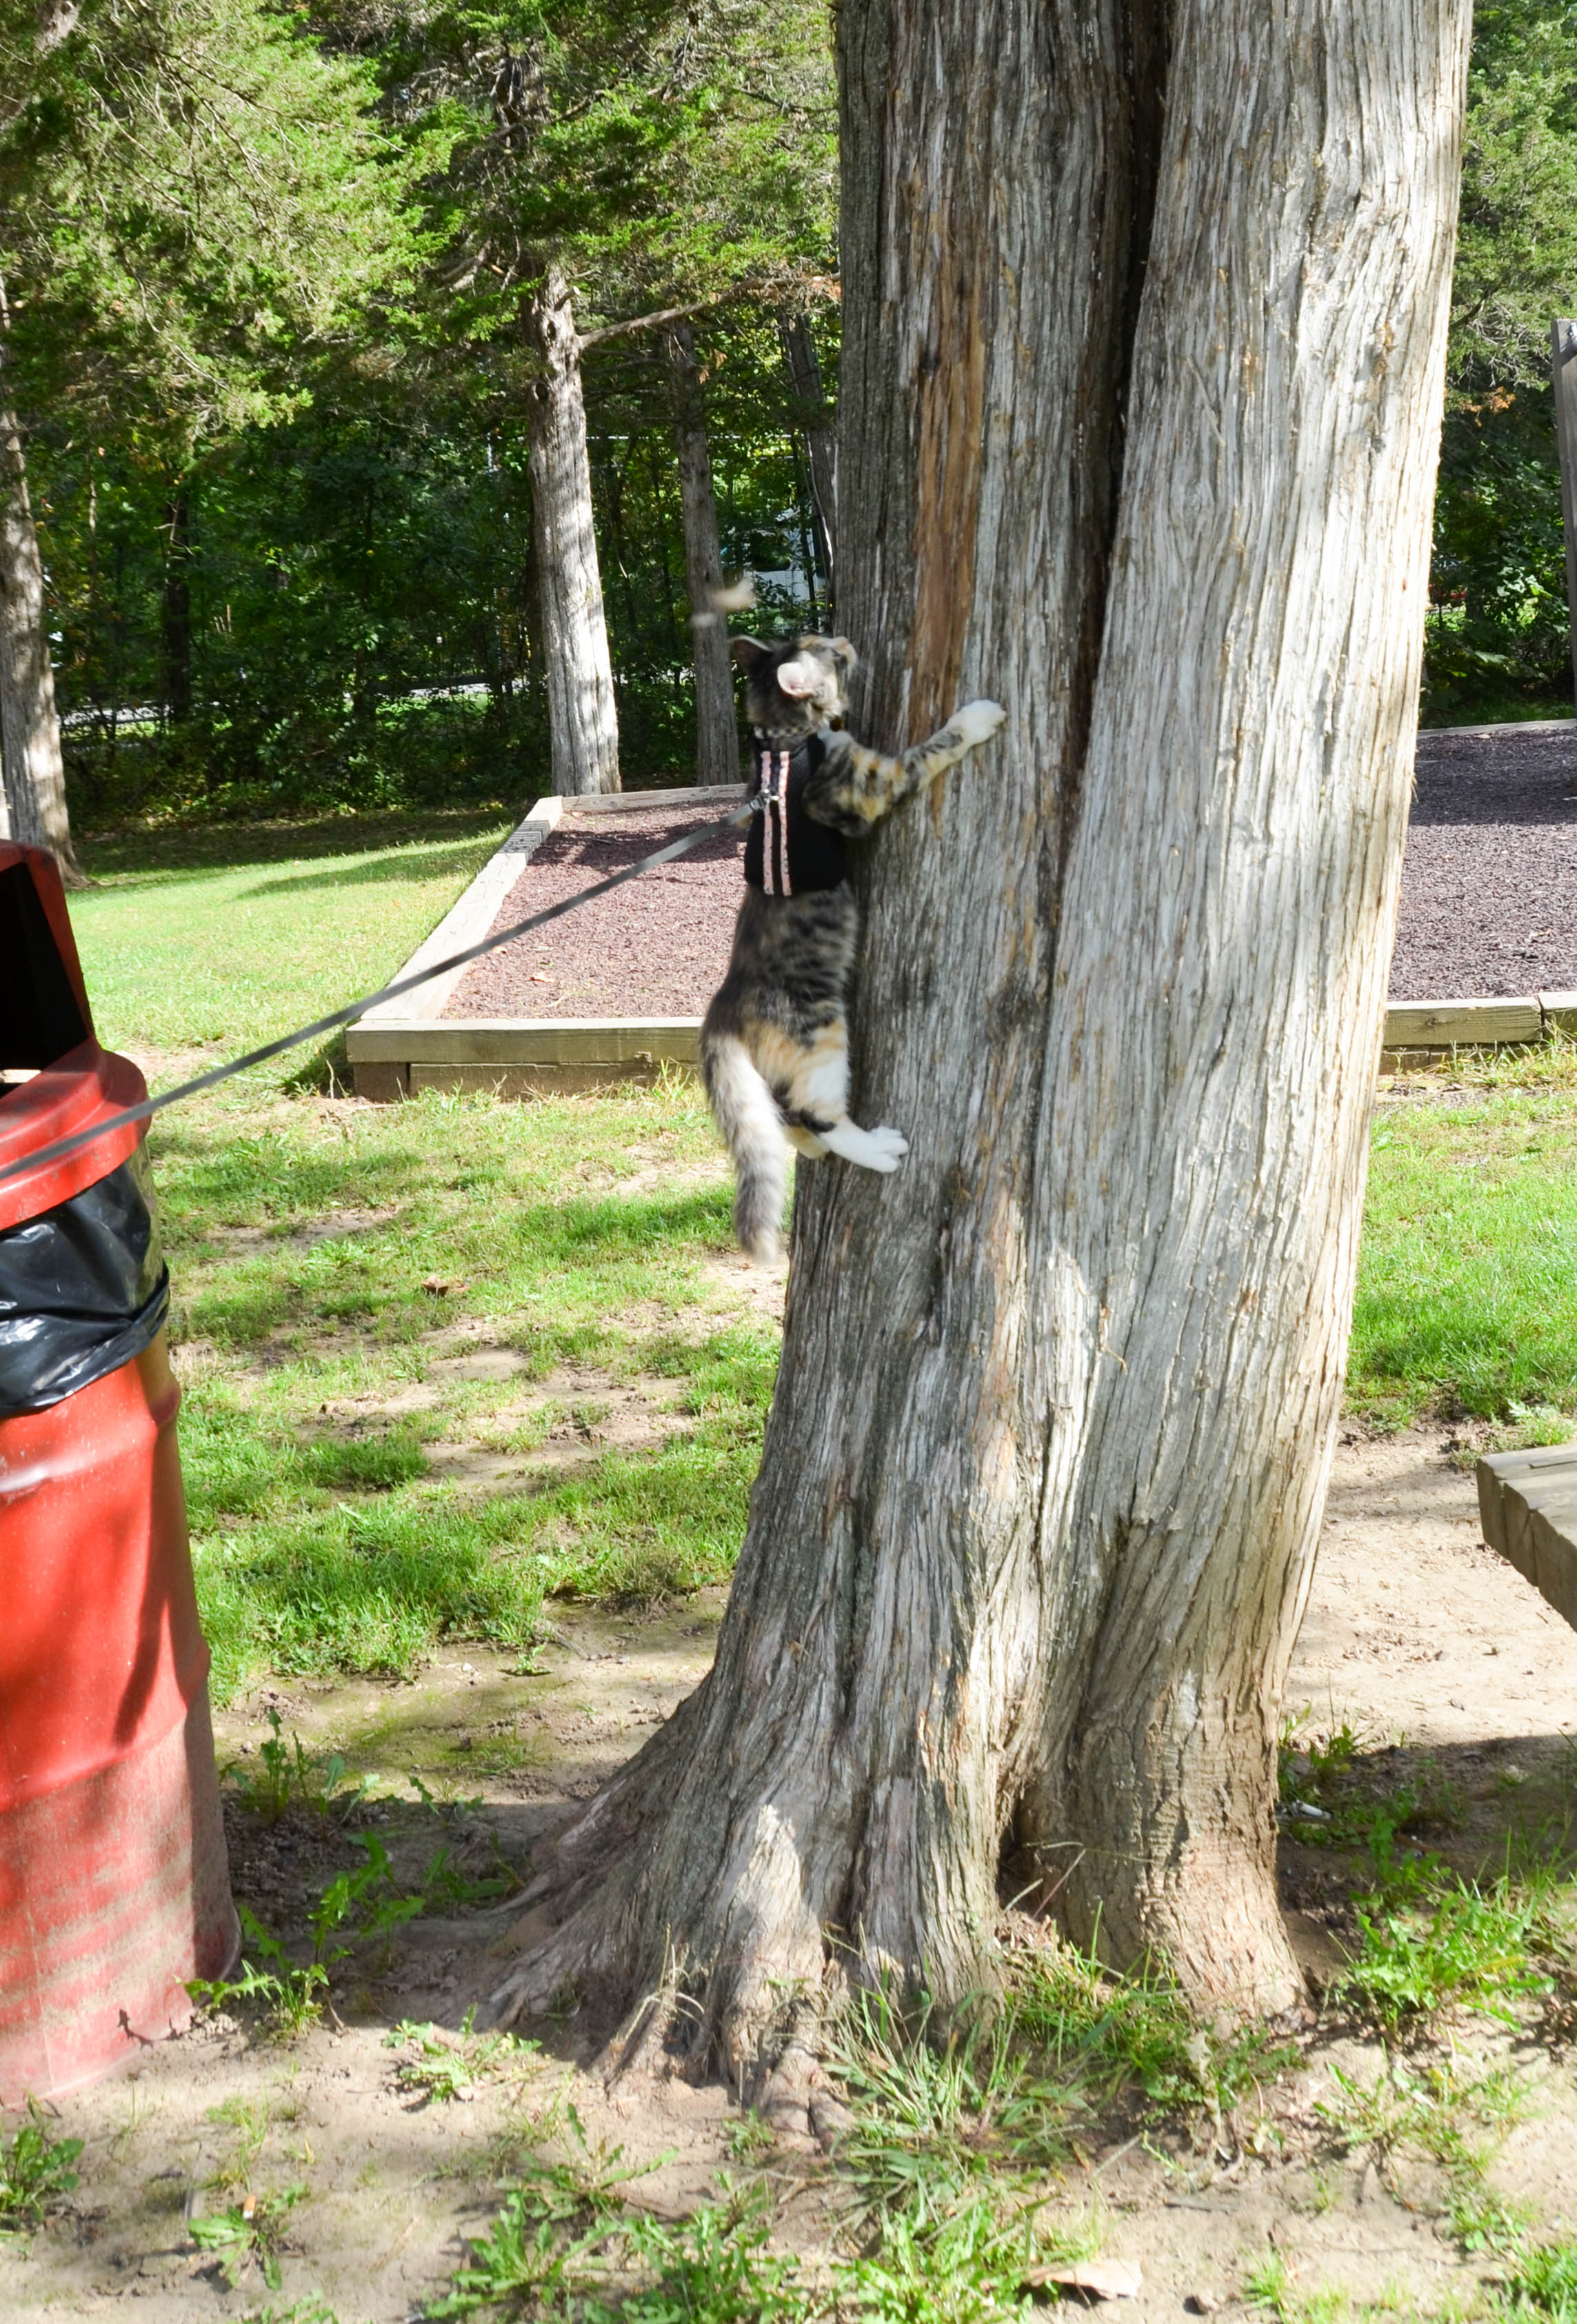 She loves climbing trees.